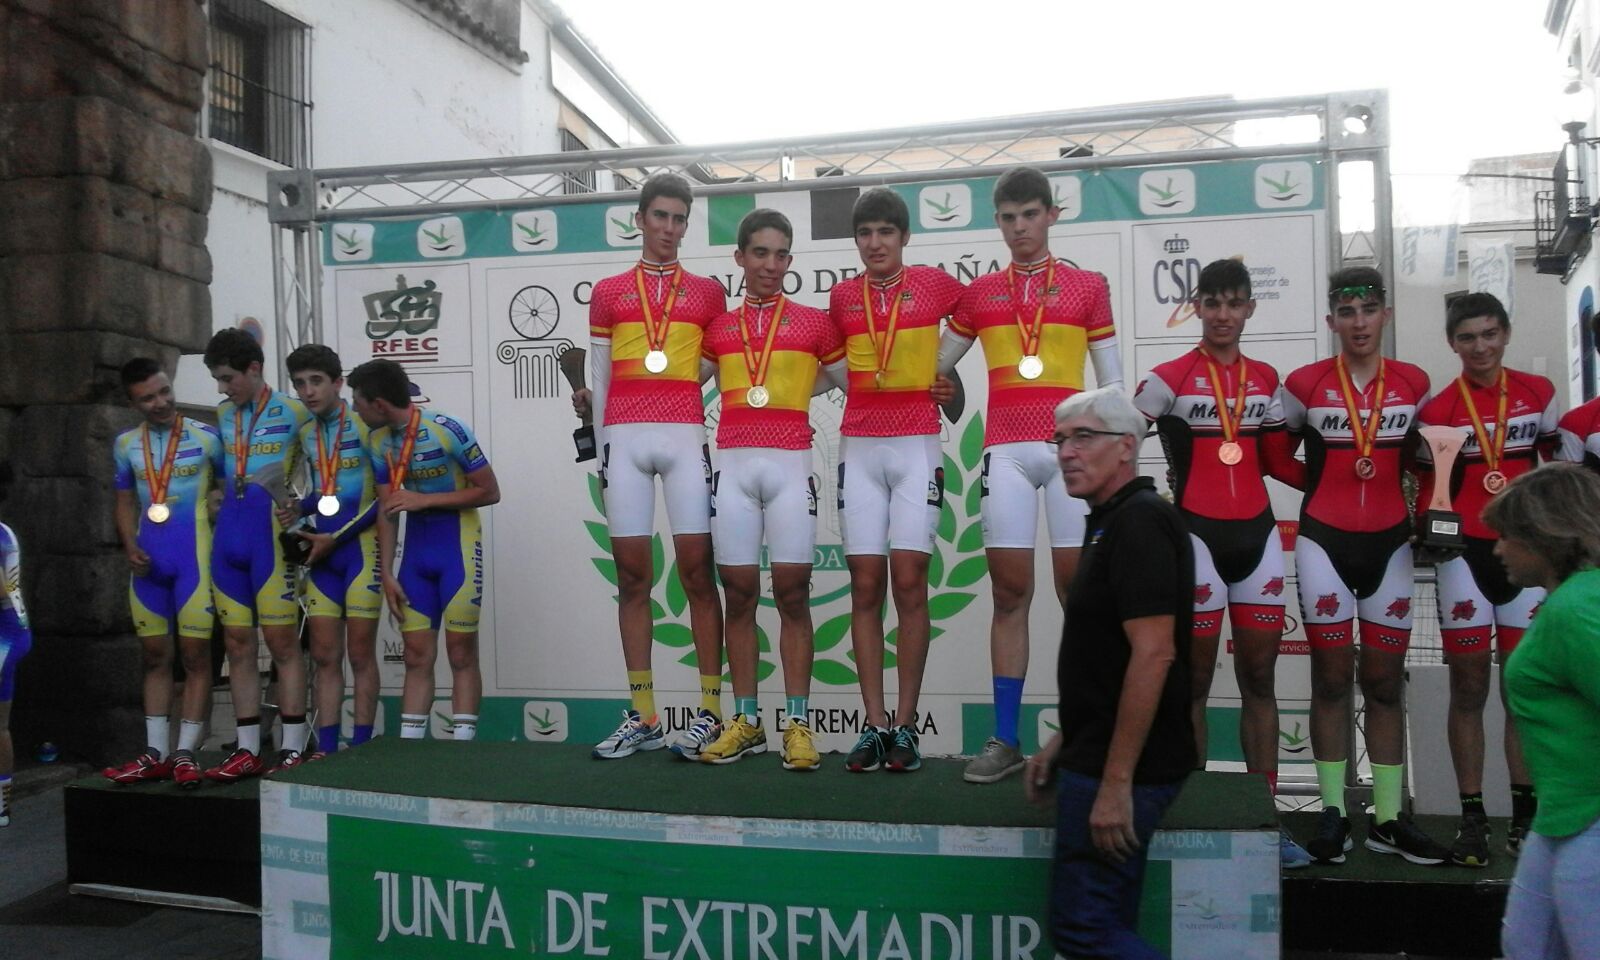 Maties Gornals, Campió d'Espanya de persecució per equips